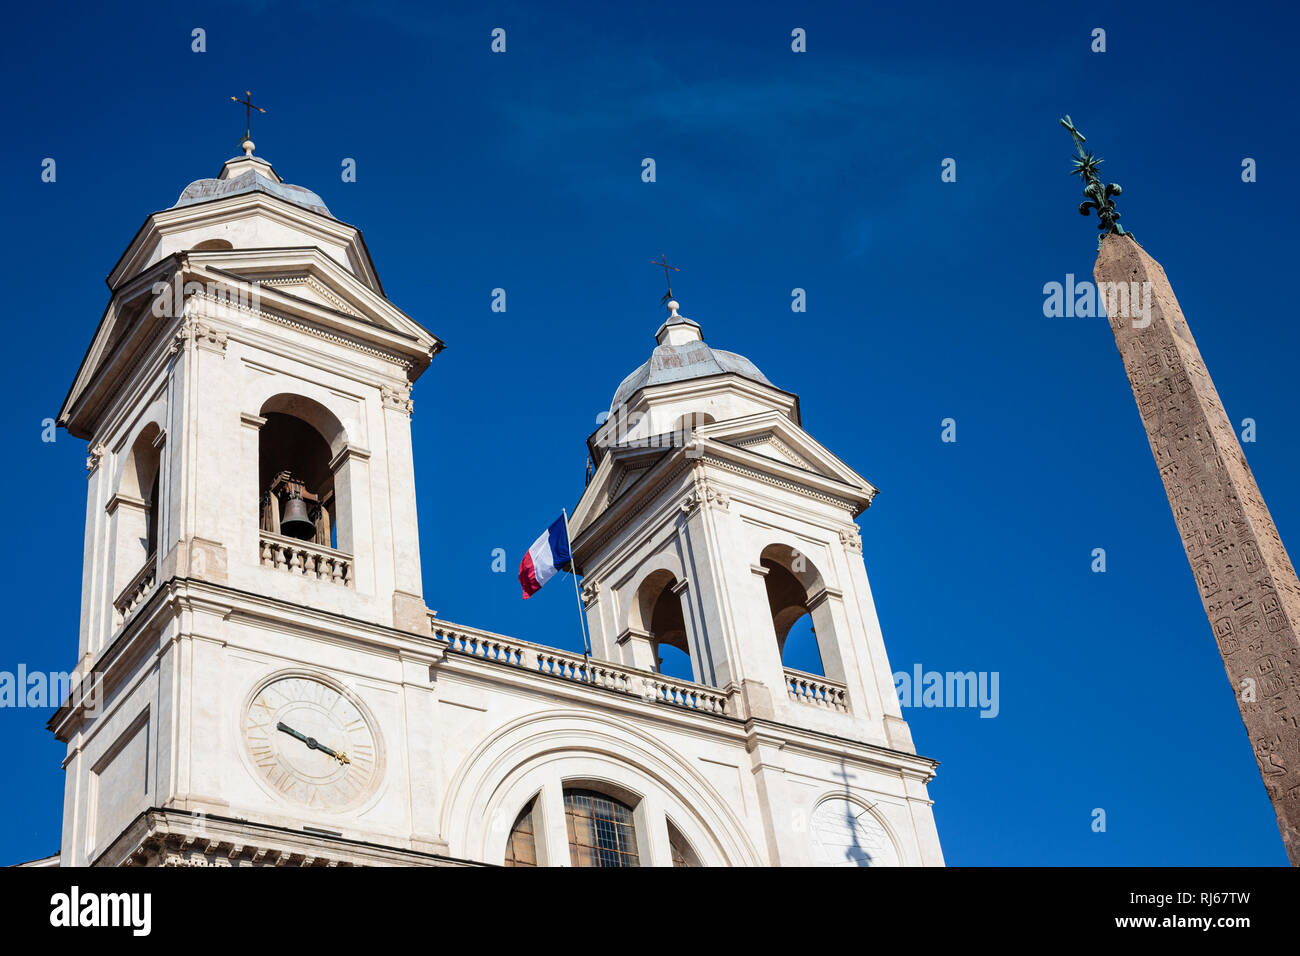 Europa, Italien, Lacio, rom, die Kirche Santa Trinitá dei Monti (errichtet 1587 n. Chr.) und der Obelisco Sallustiano Foto de stock